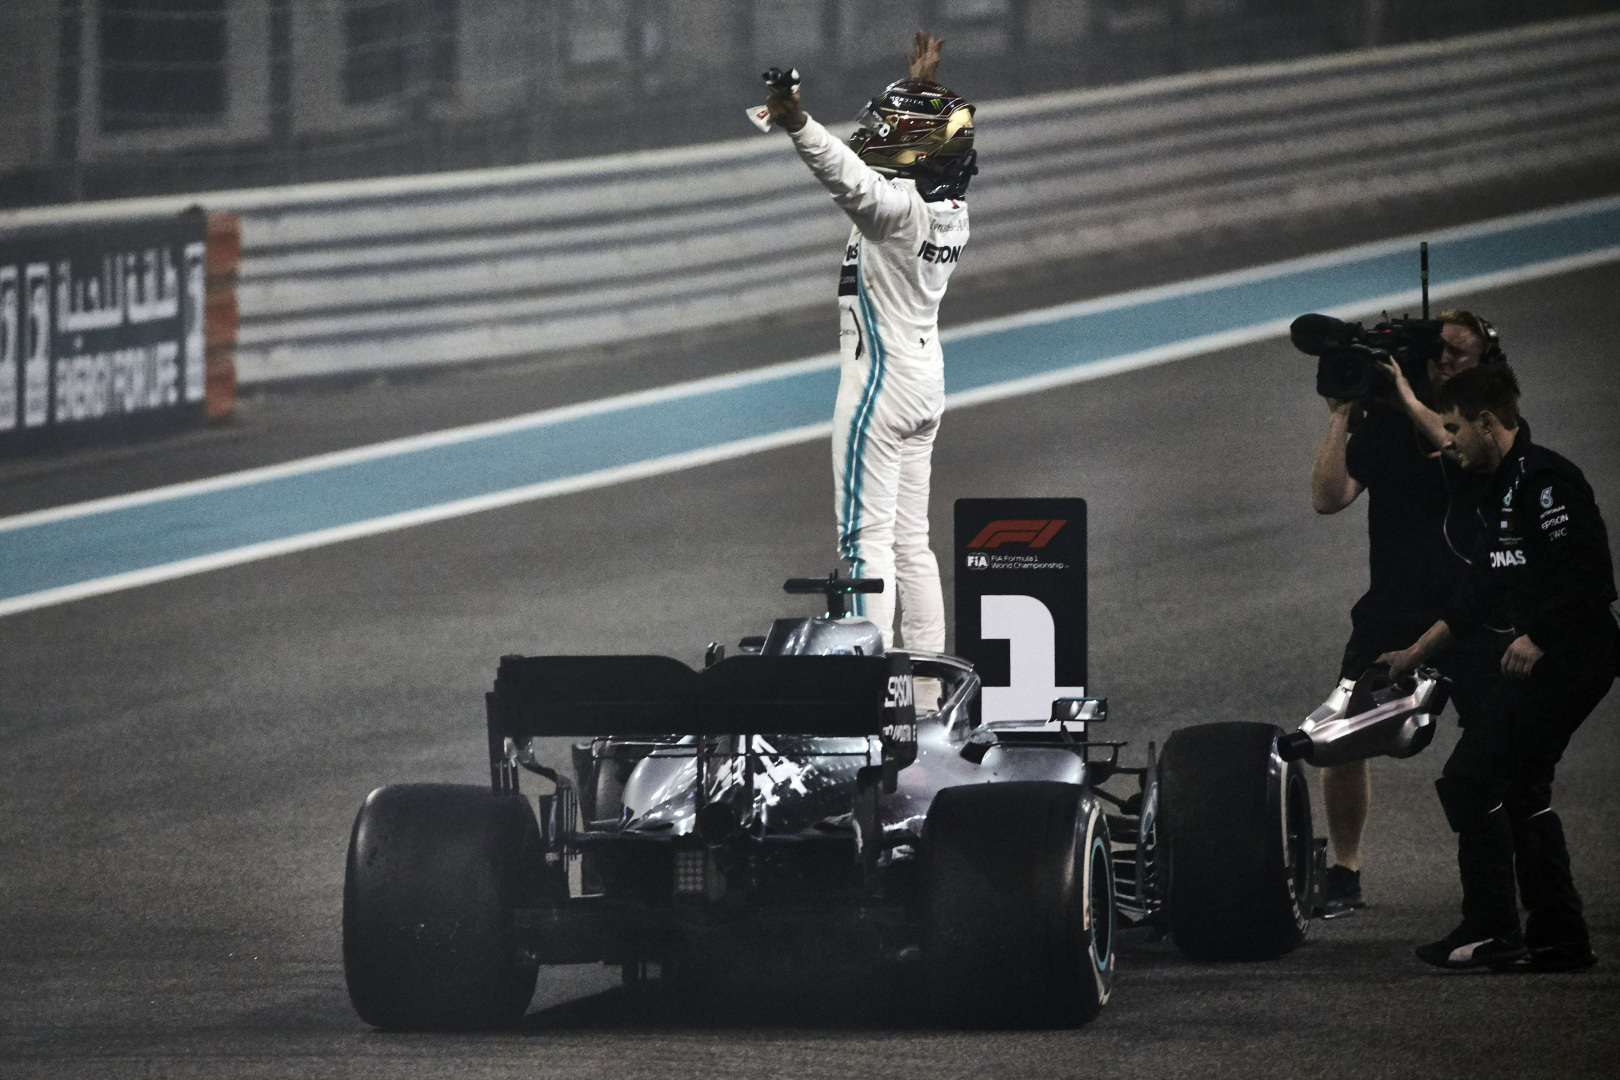 2019 Abu Dhabi Grand Prix, Sunday - Lewis Hamilton (image courtesy Mercedes-AMG Petronas)